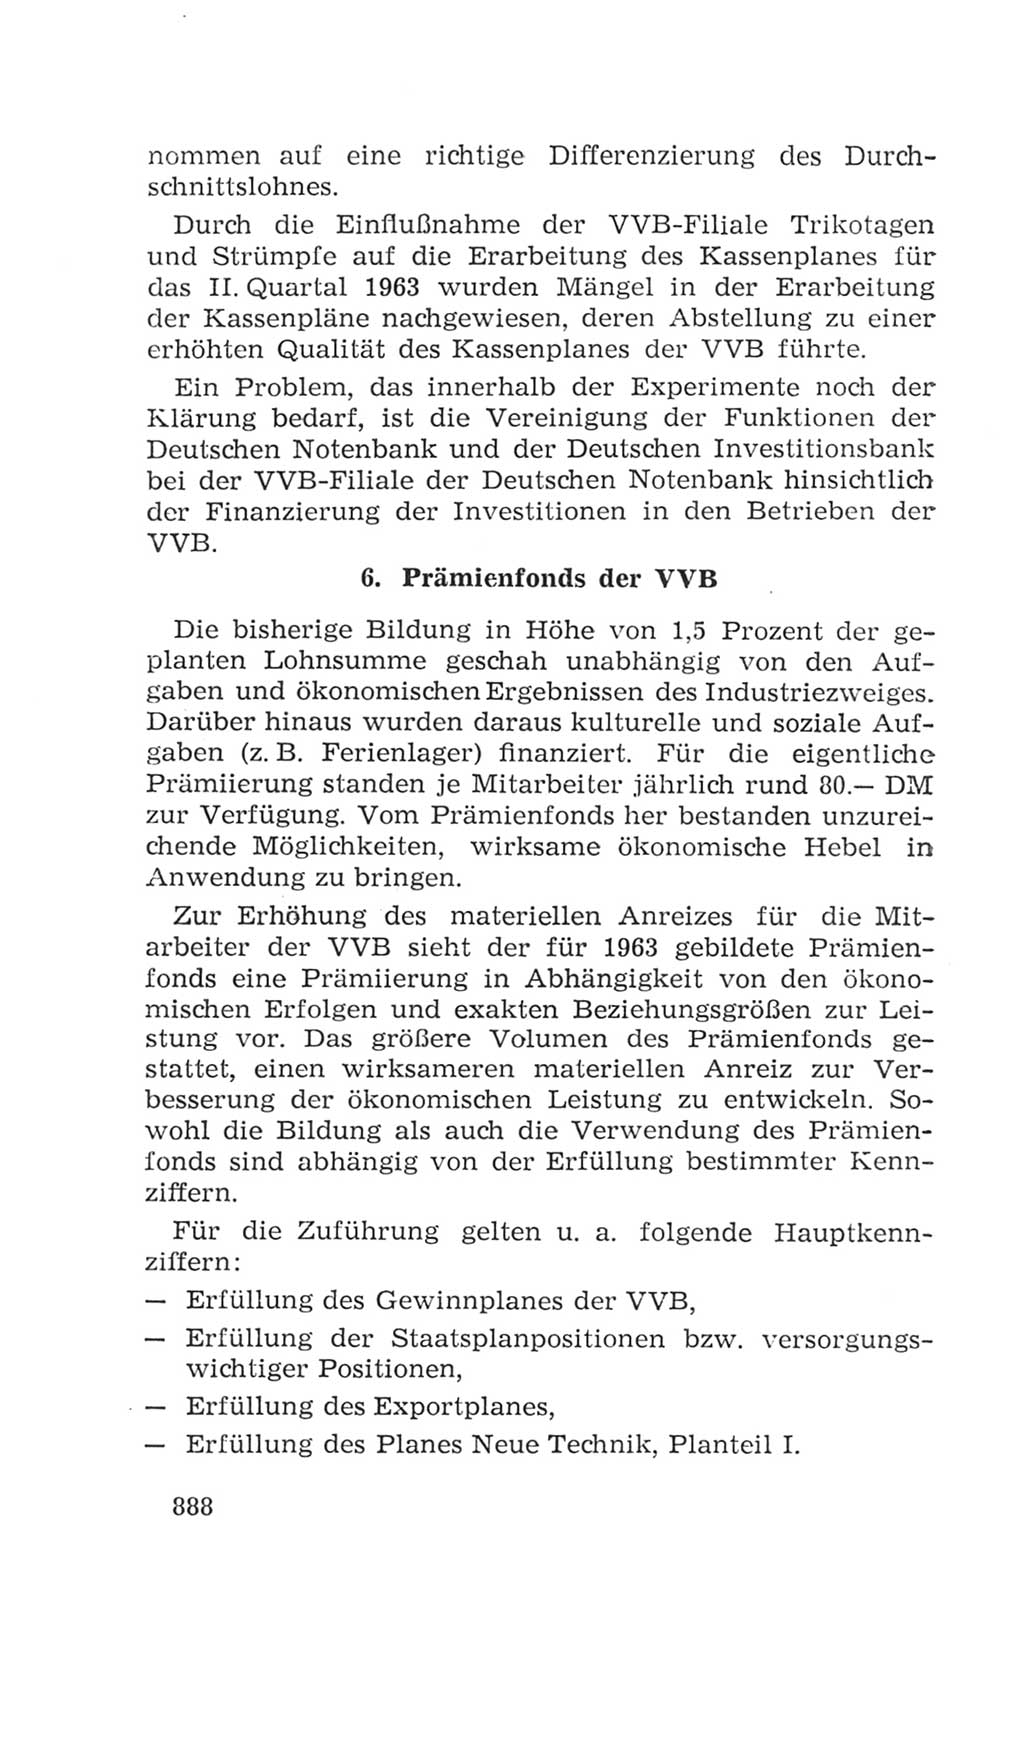 Volkskammer (VK) der Deutschen Demokratischen Republik (DDR), 4. Wahlperiode 1963-1967, Seite 888 (VK. DDR 4. WP. 1963-1967, S. 888)